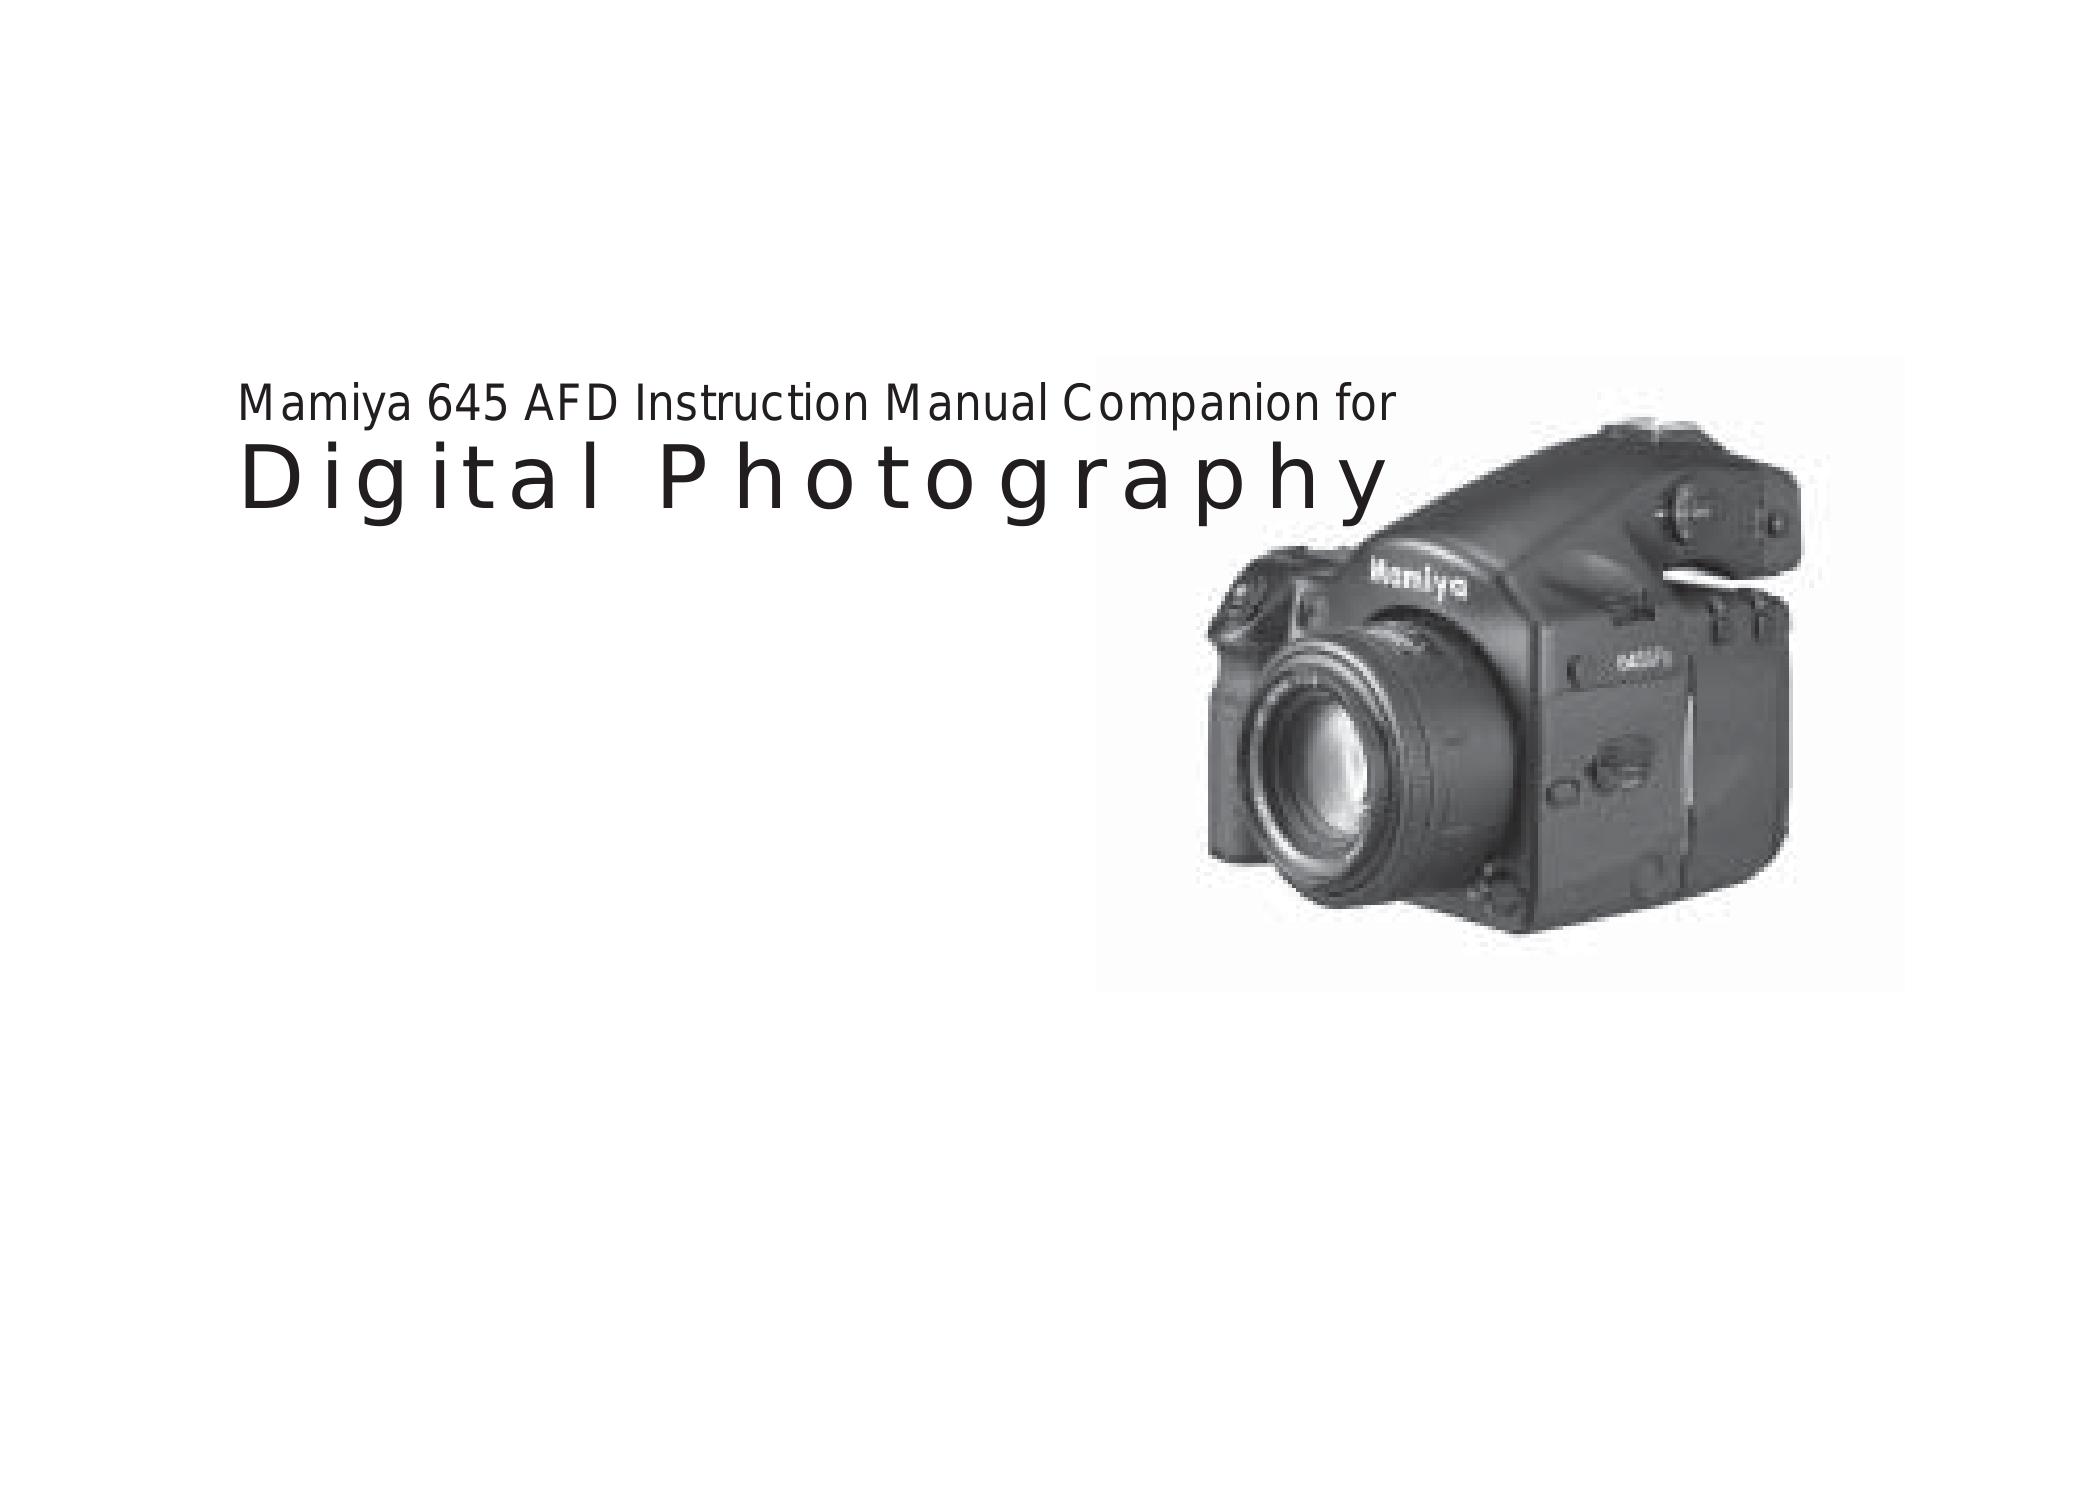 Mamiya 645 AFD Digital Camera User Manual